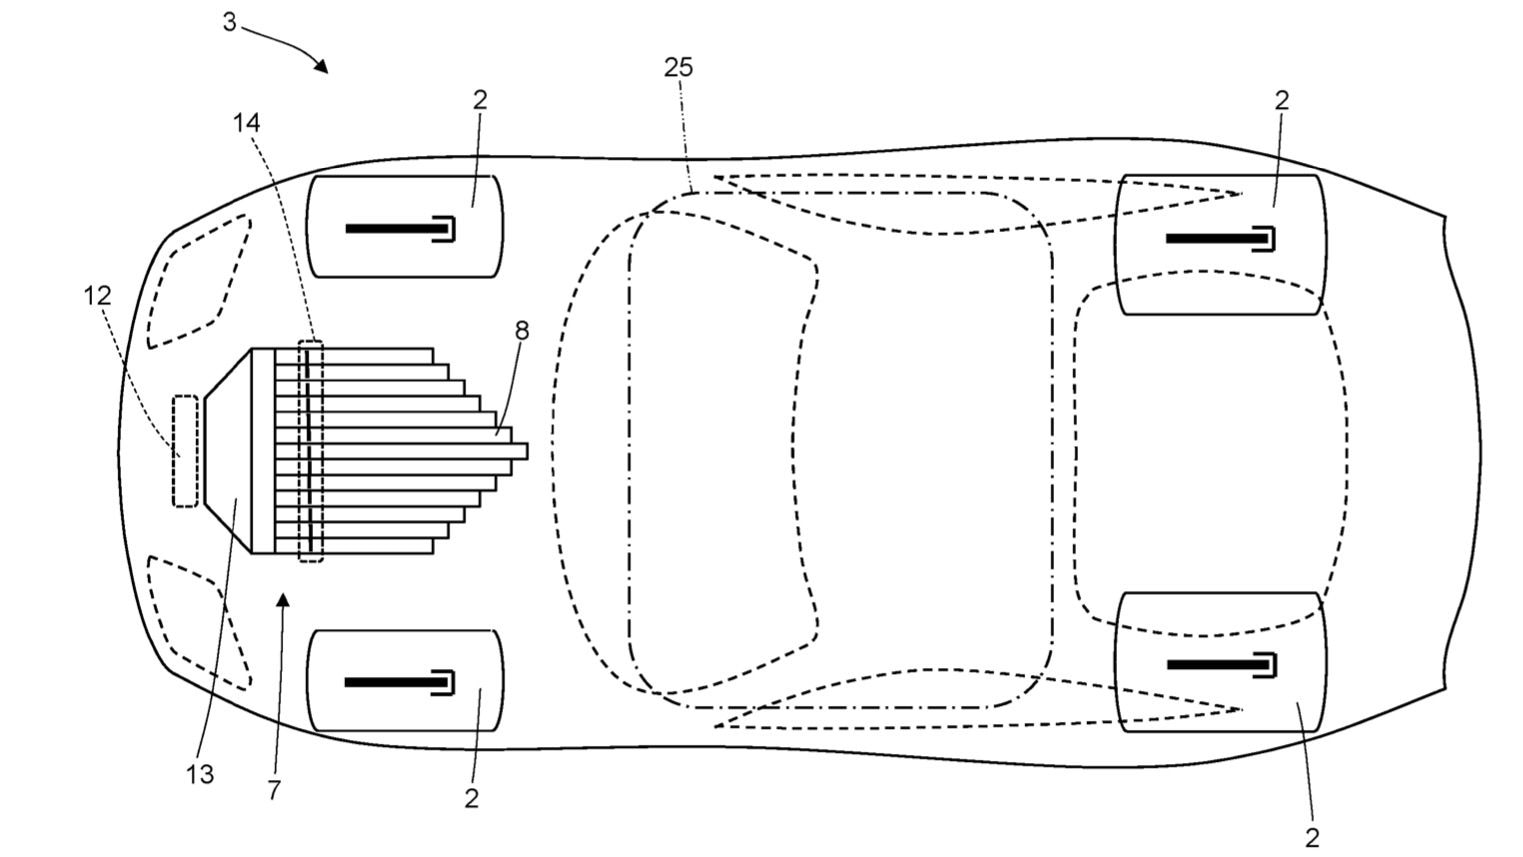 Ferrari air-based sound generator patent image